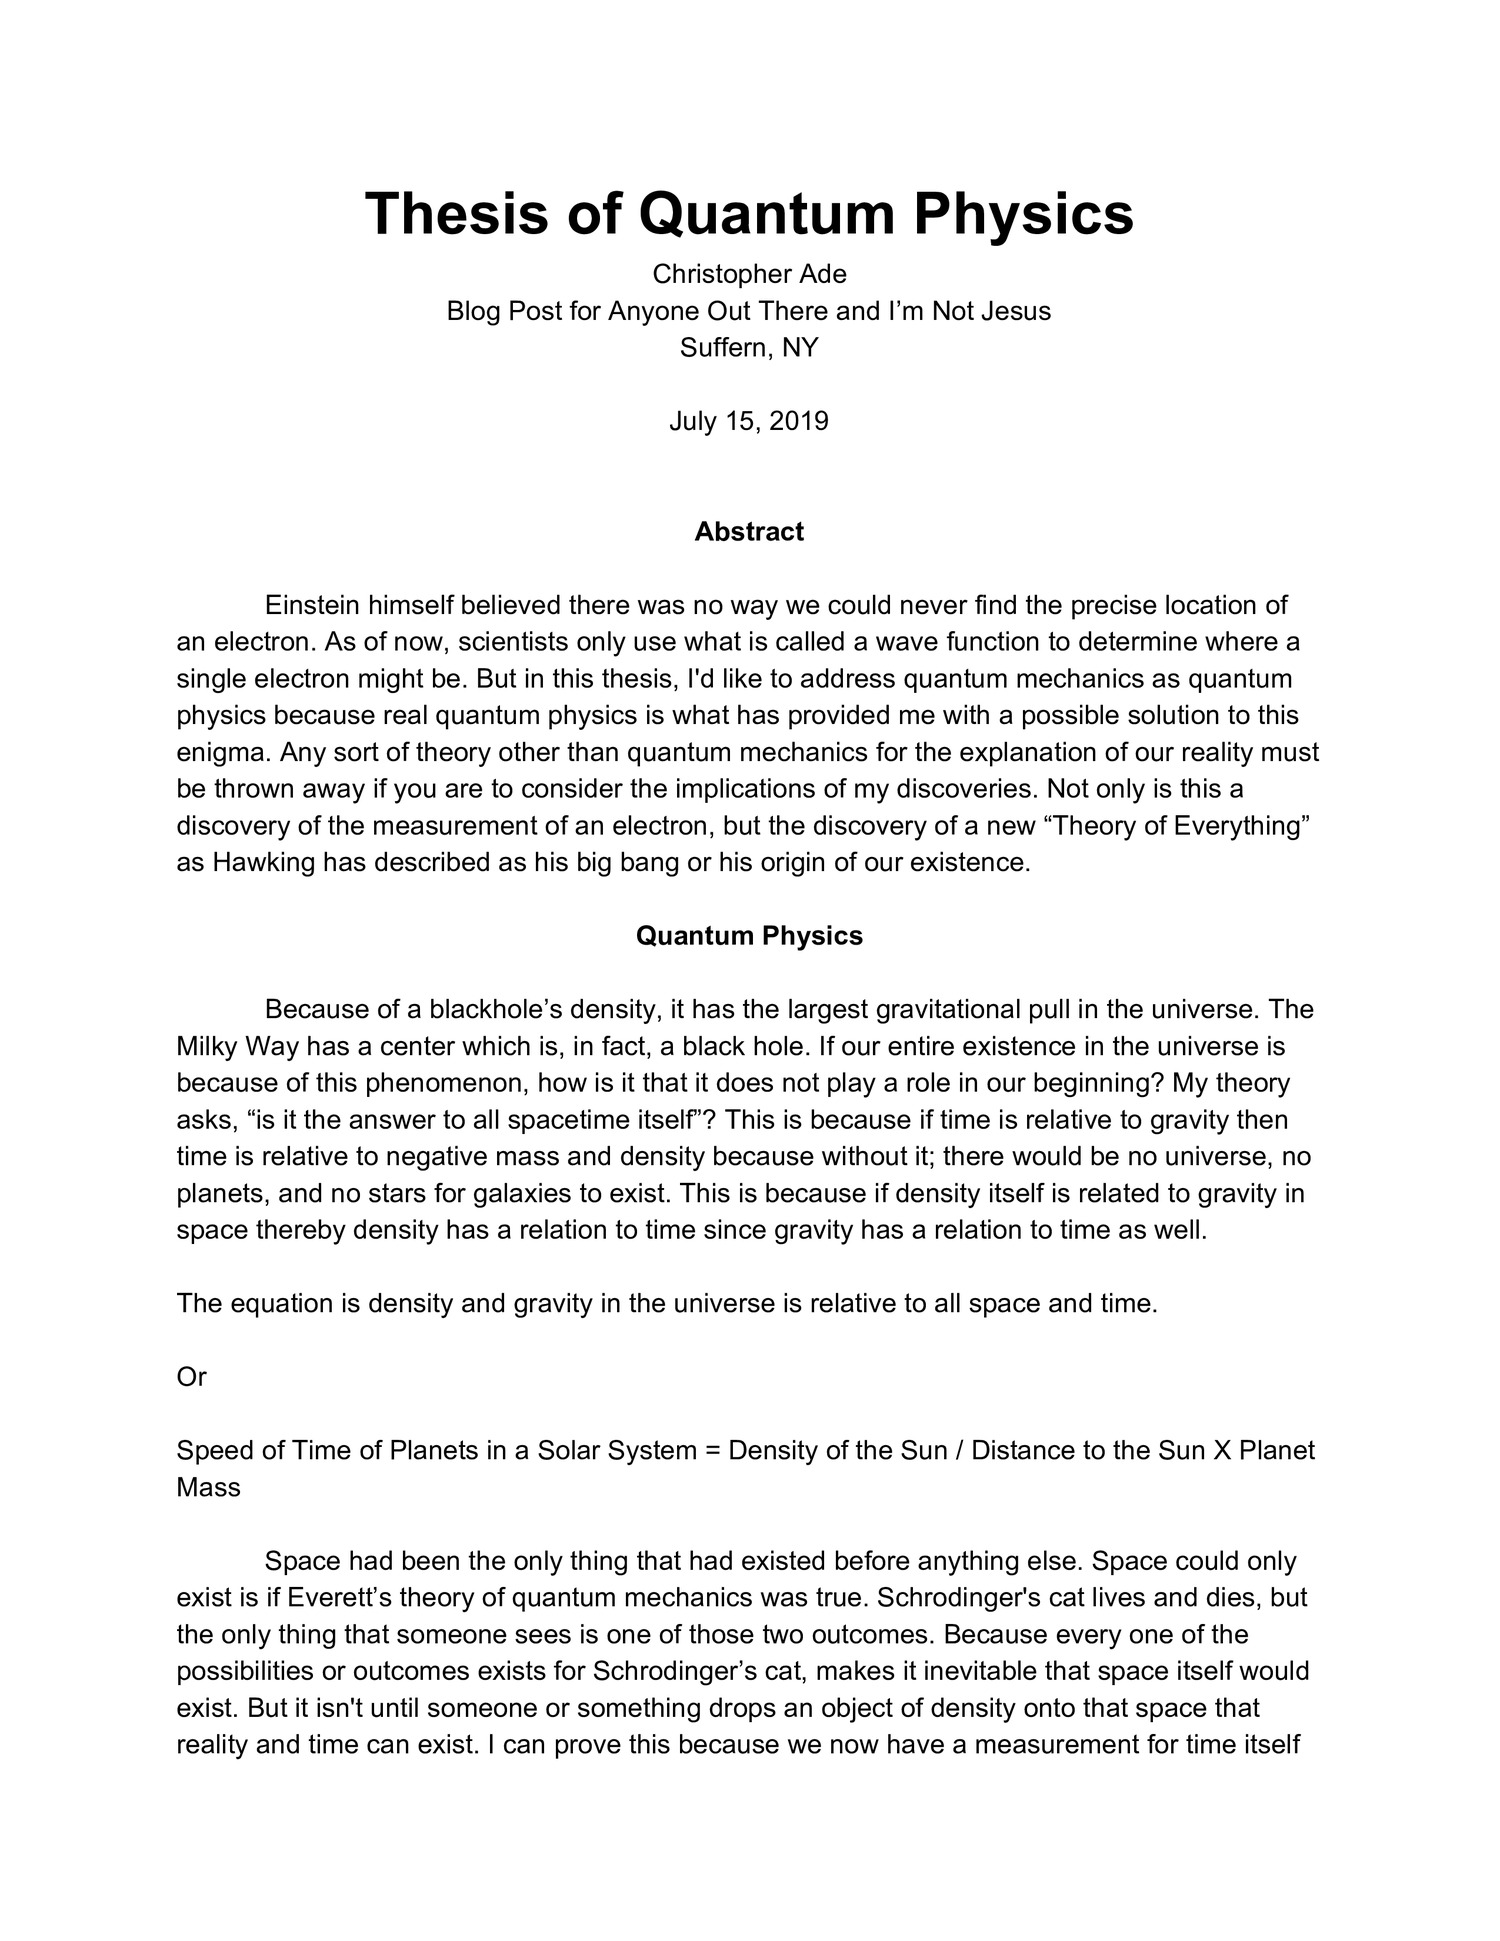 quantum physics thesis